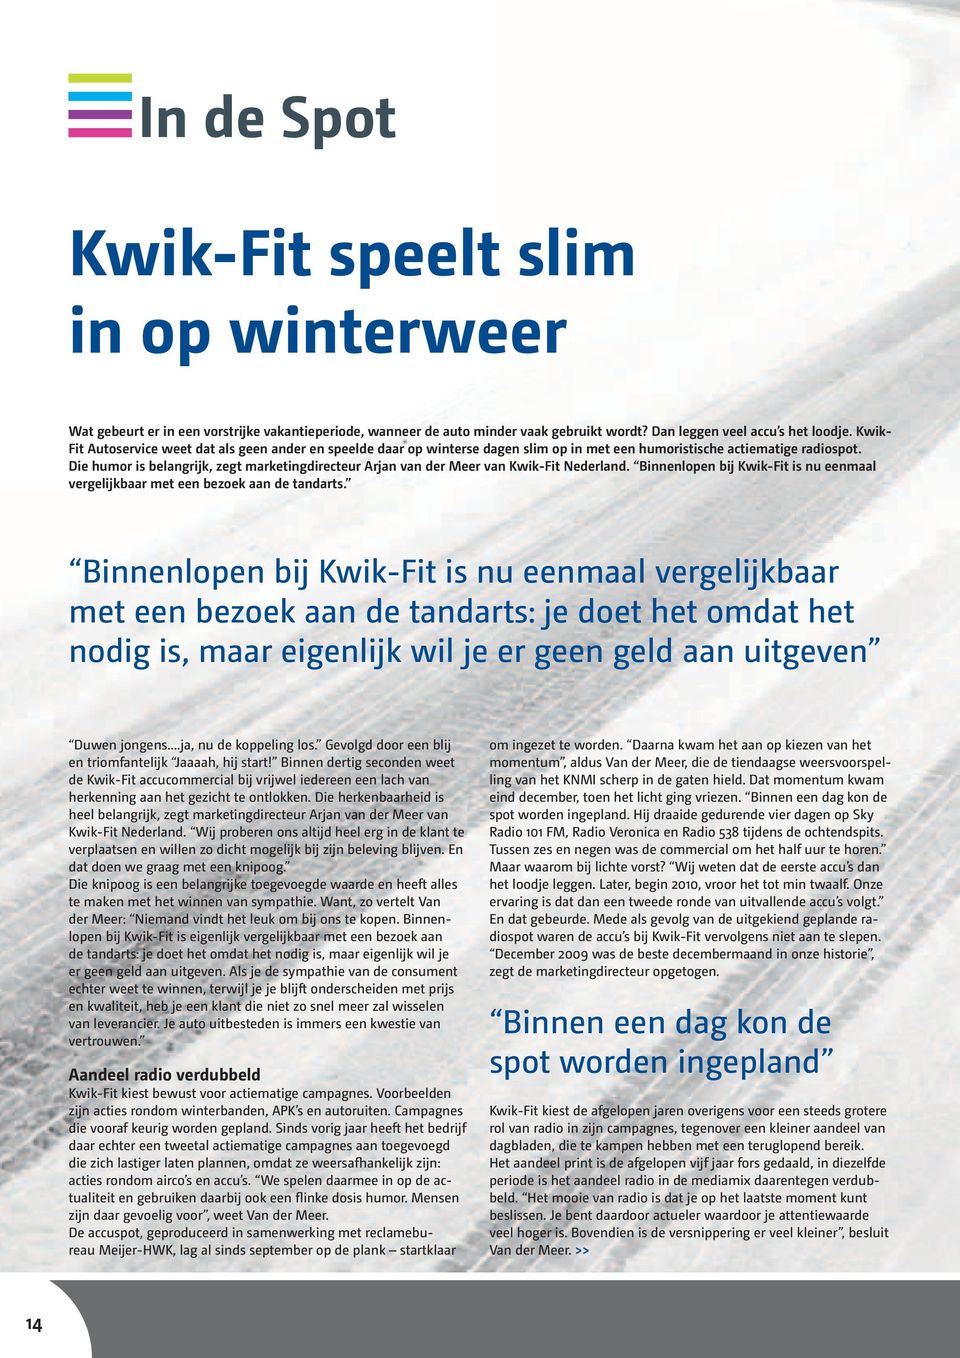 Die humor is belangrijk, zegt marketingdirecteur Arjan van der Meer van Kwik-Fit Nederland. Binnenlopen bij Kwik-Fit is nu eenmaal vergelijkbaar met een bezoek aan de tandarts.